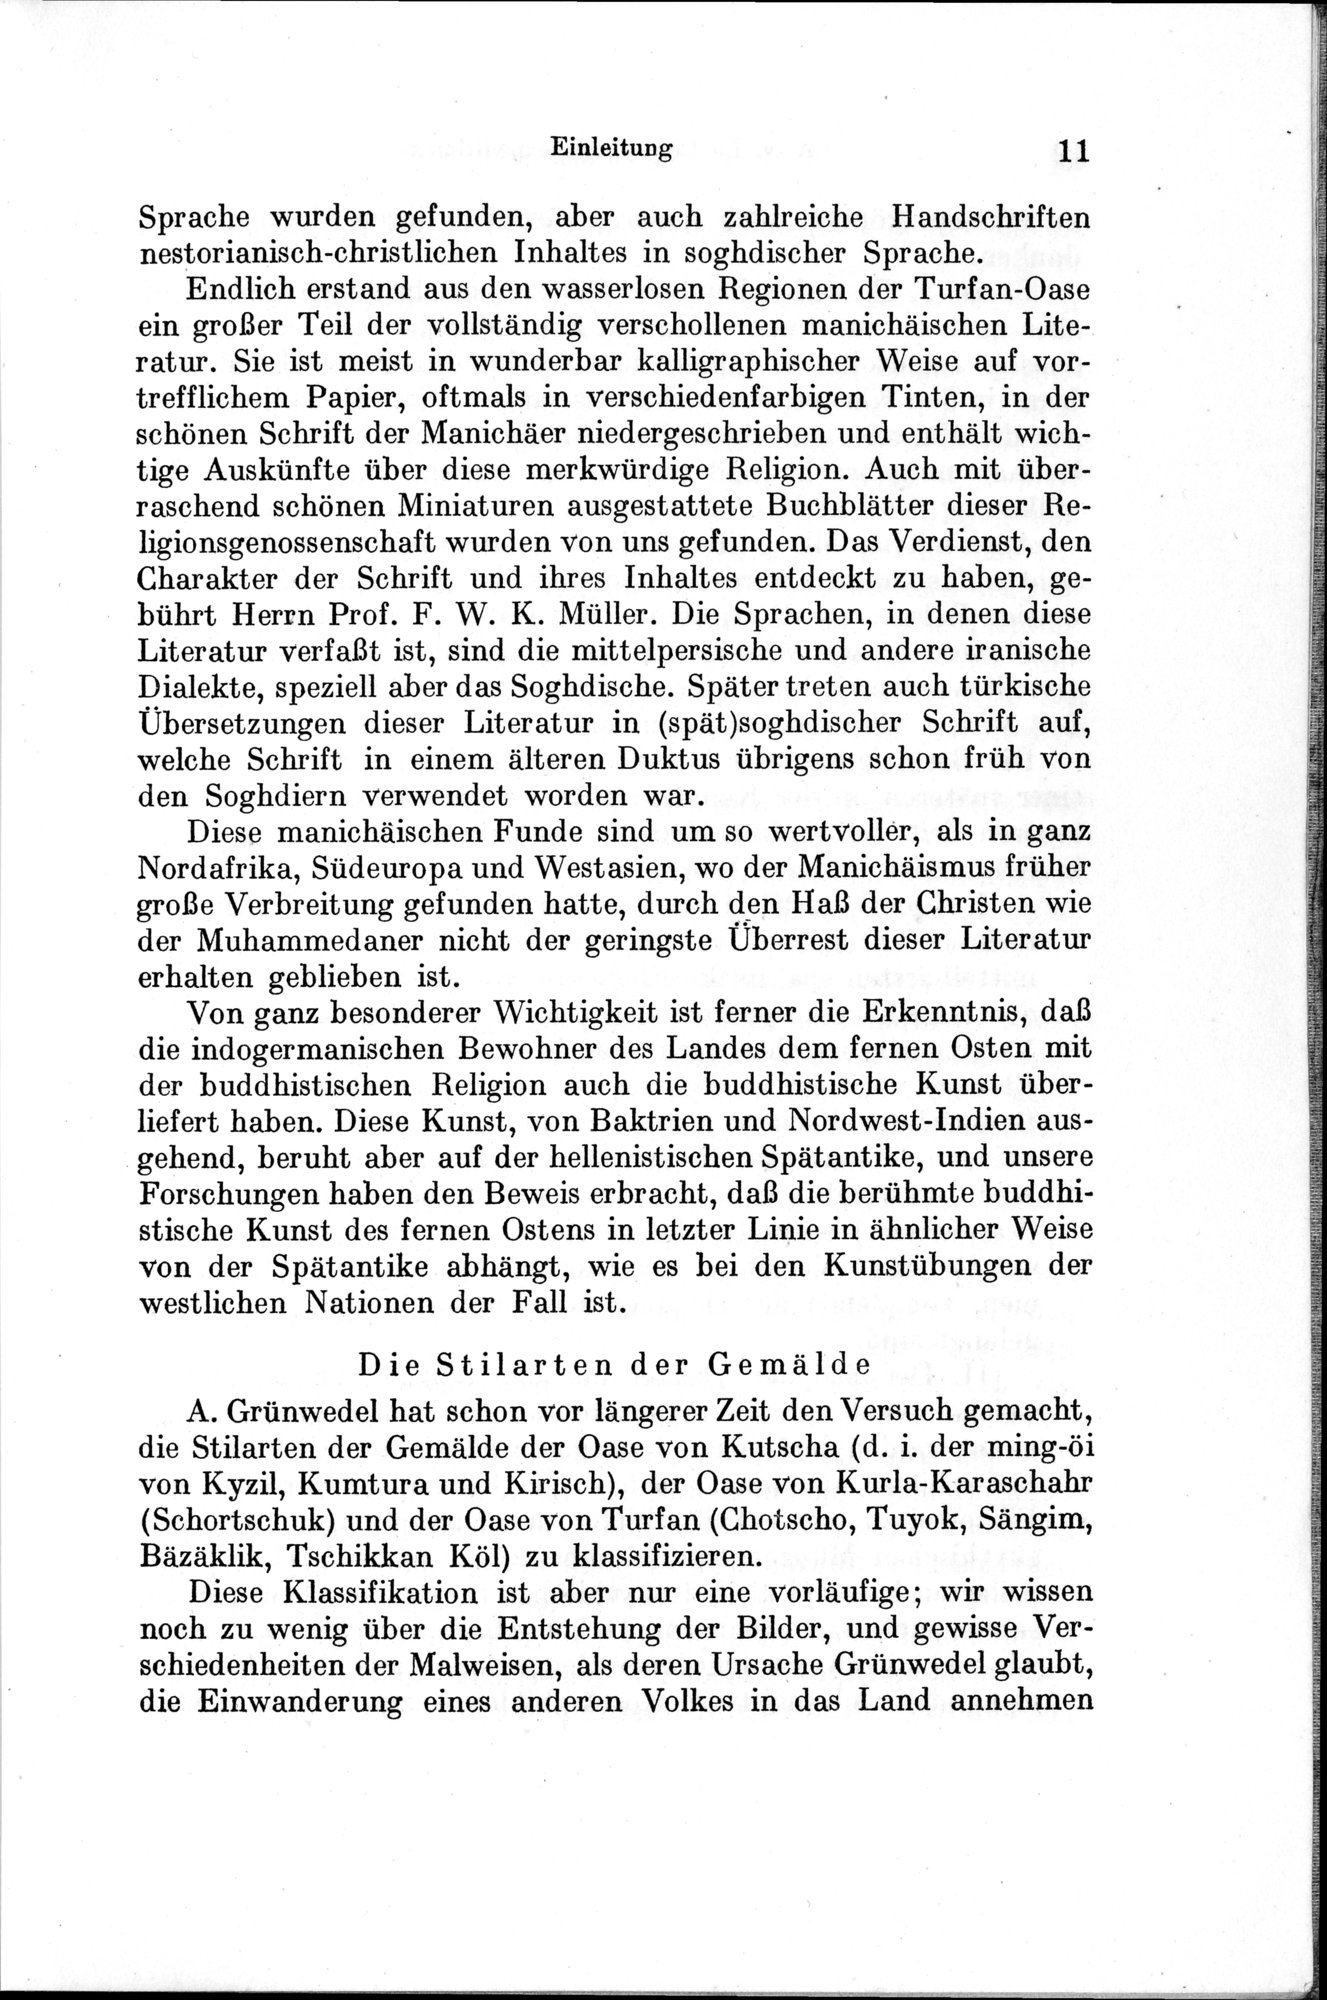 Auf Hellas Spuren in Ostturkistan : vol.1 / Page 27 (Grayscale High Resolution Image)